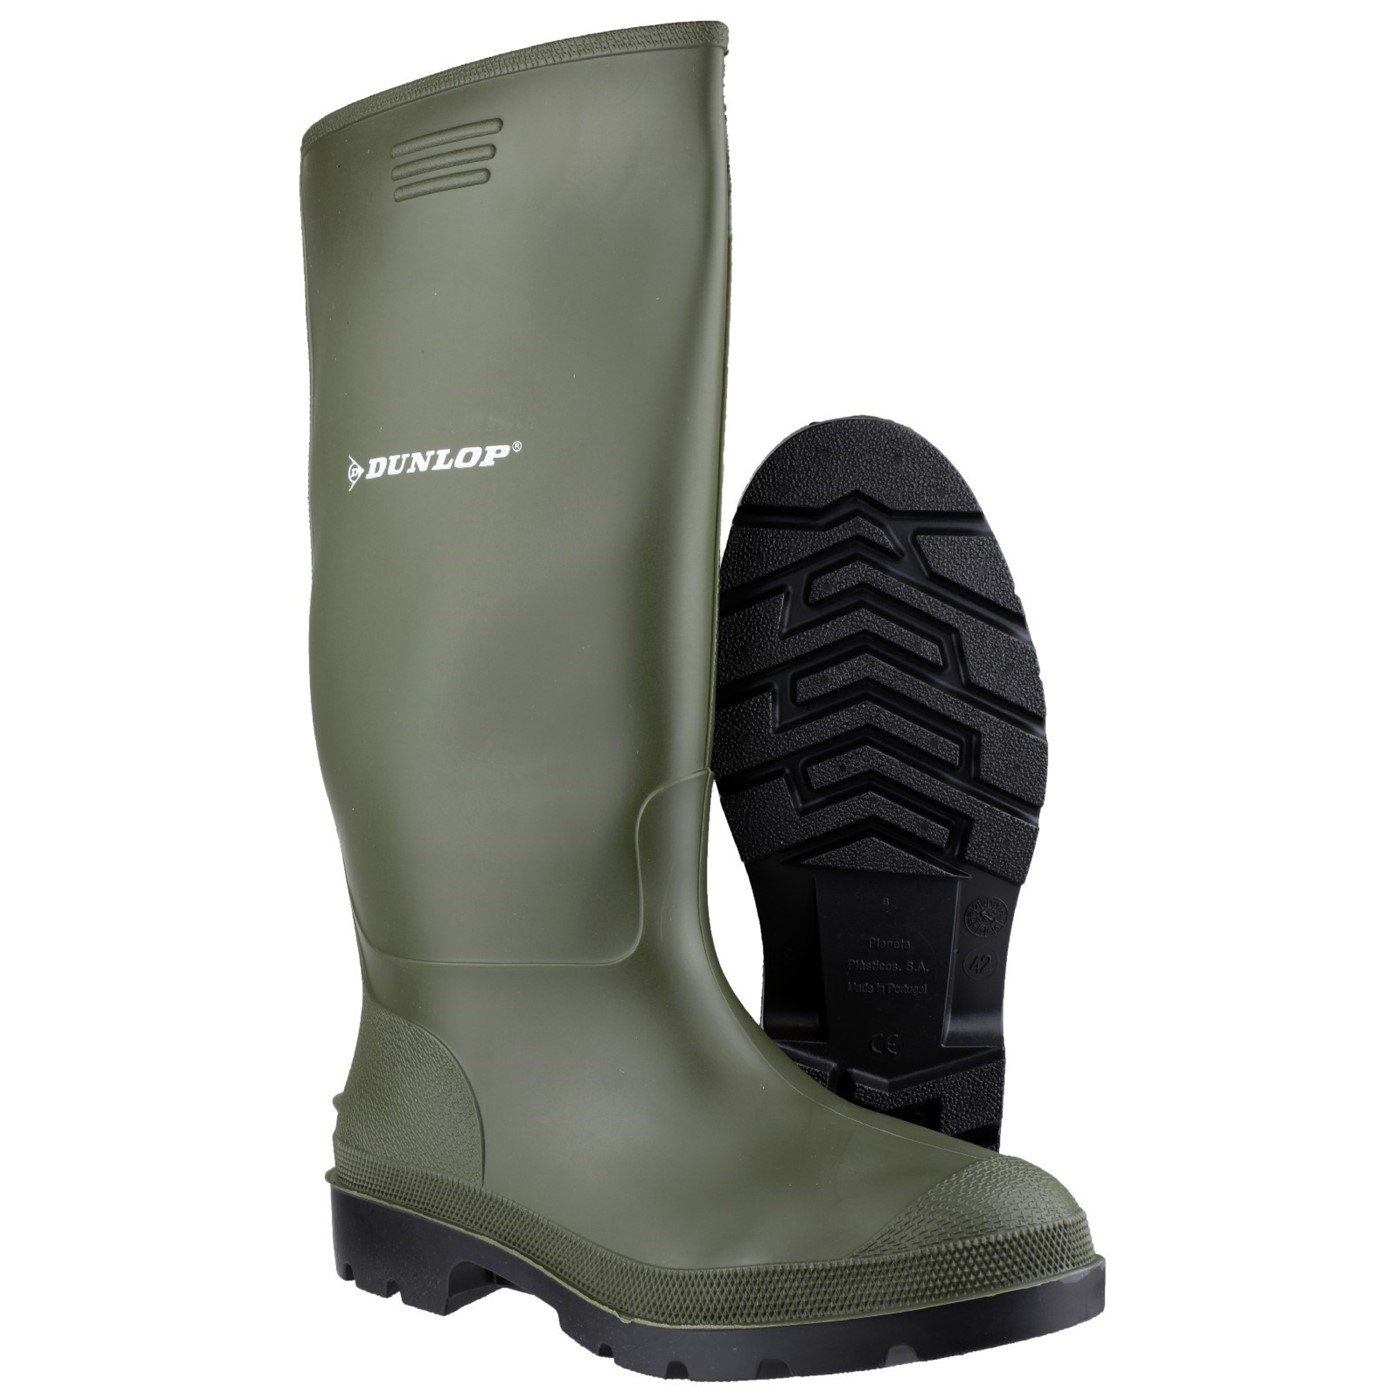 Dunlop Pricemaster Boot, Green, Size 6(39)